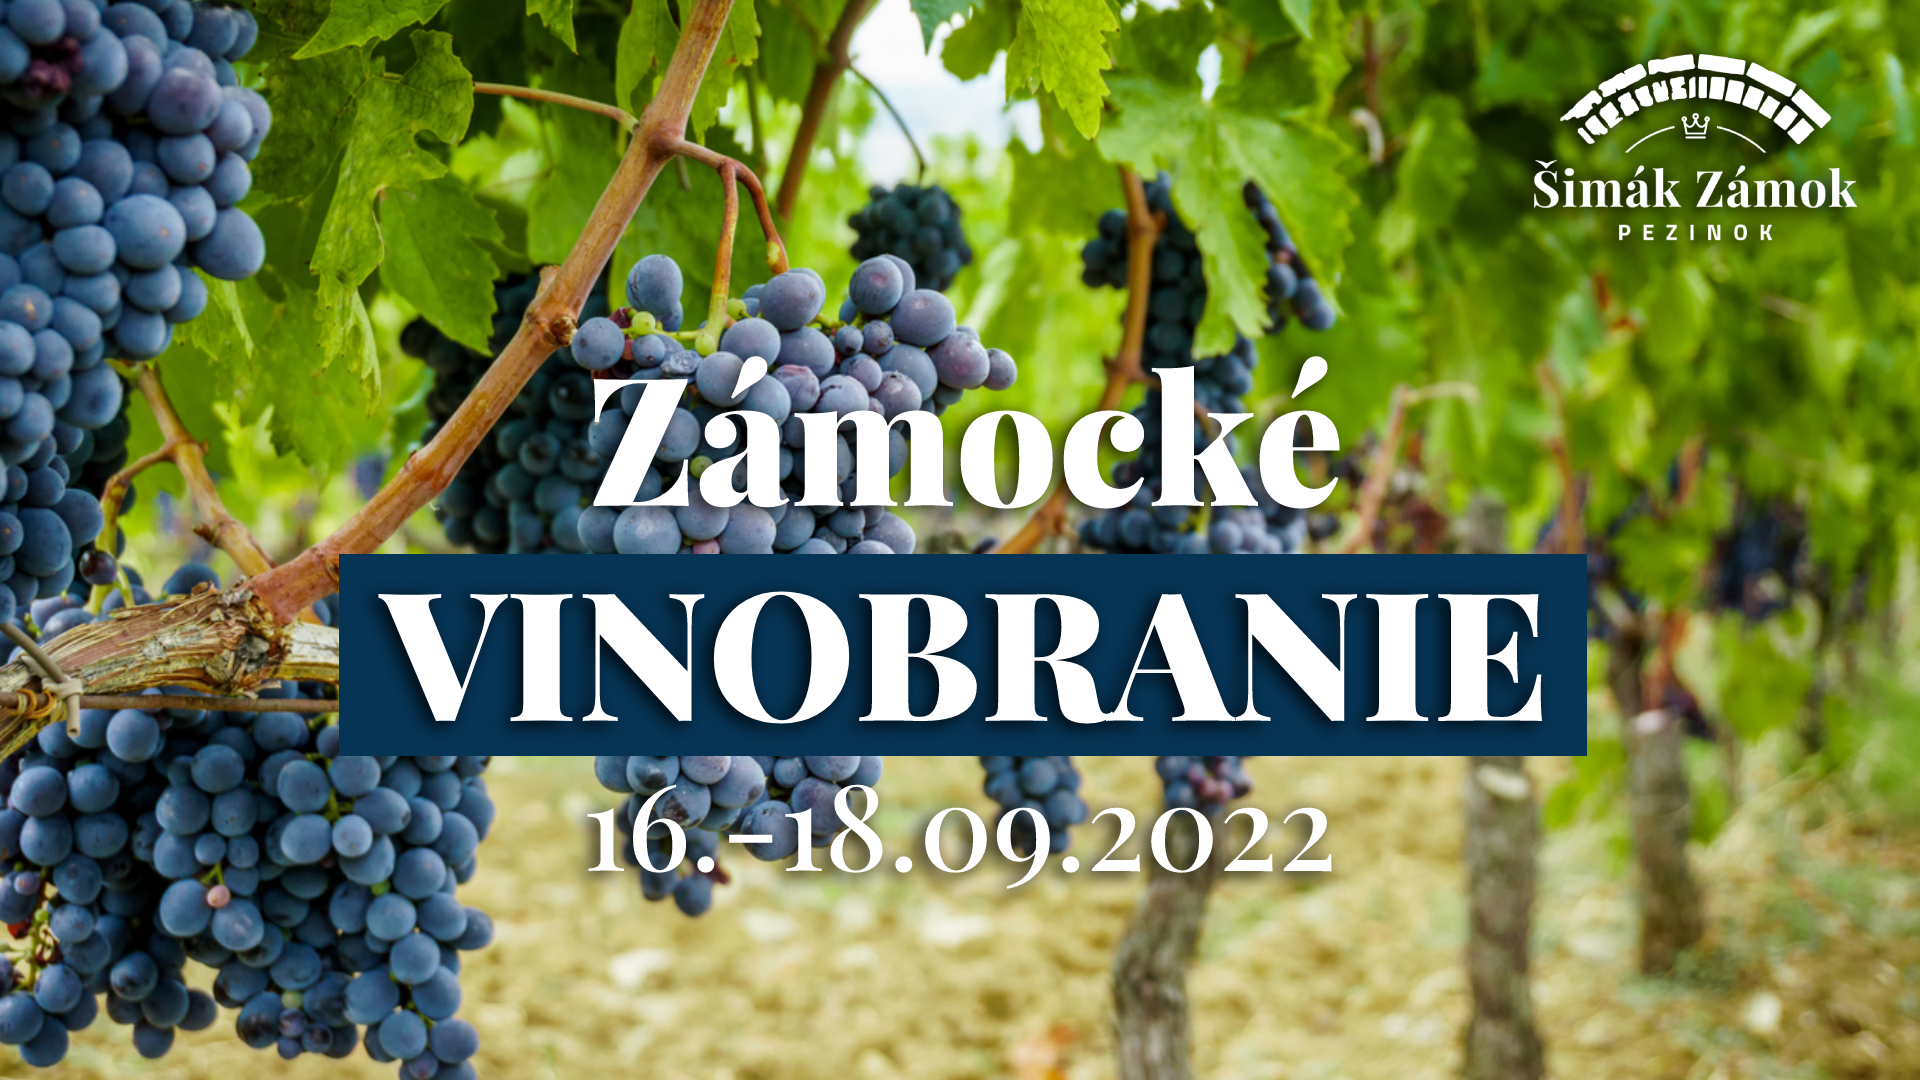 Zmock vinobranie 2022 Pezinok